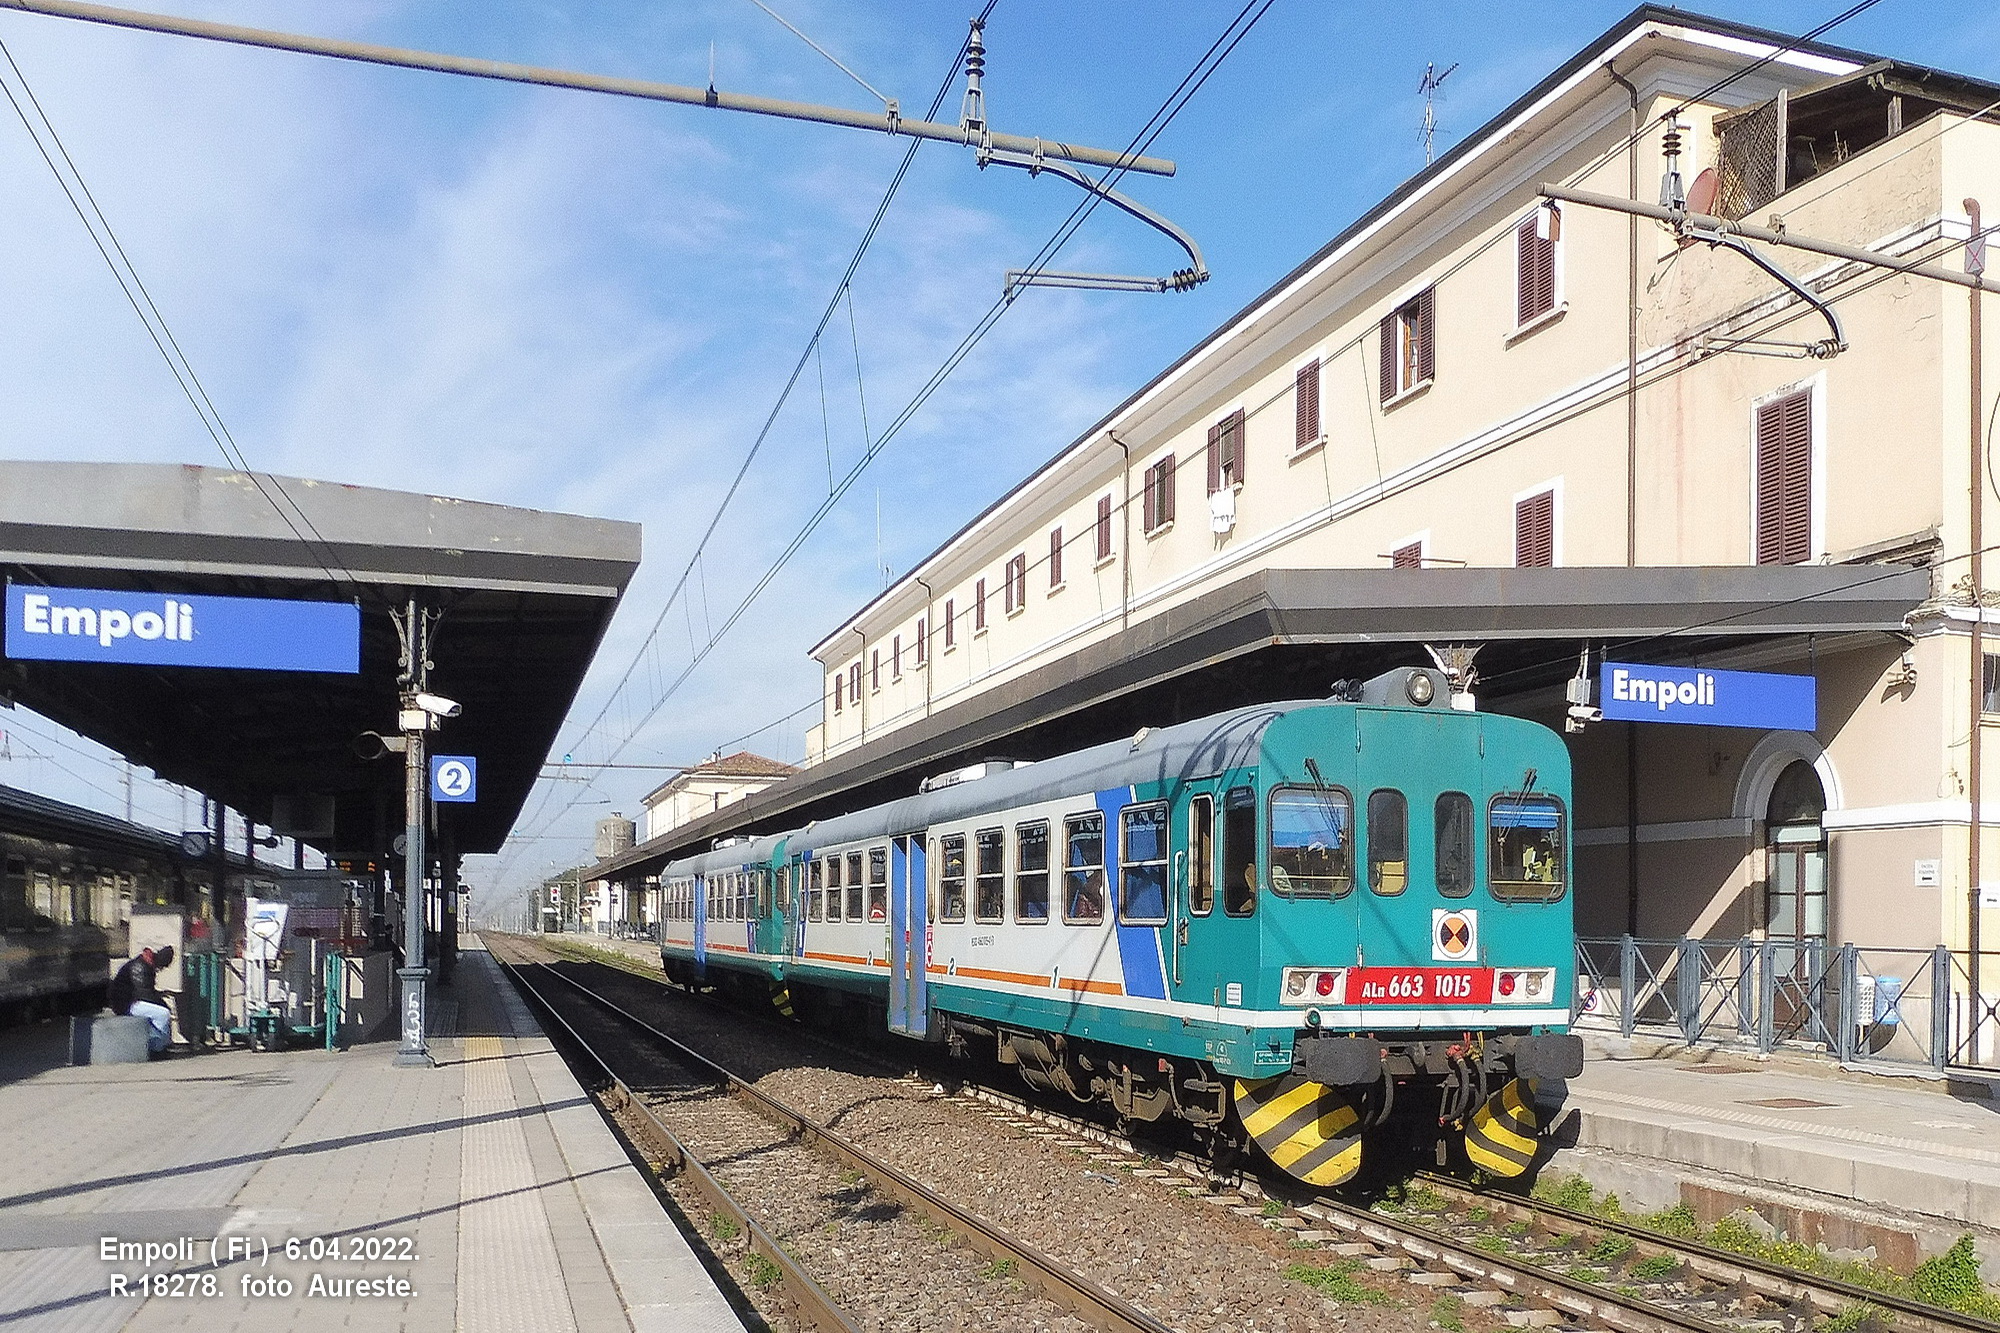 Linea ferroviaria Firenze-Empoli, il 18 e 19 primo fine settimana di interruzione